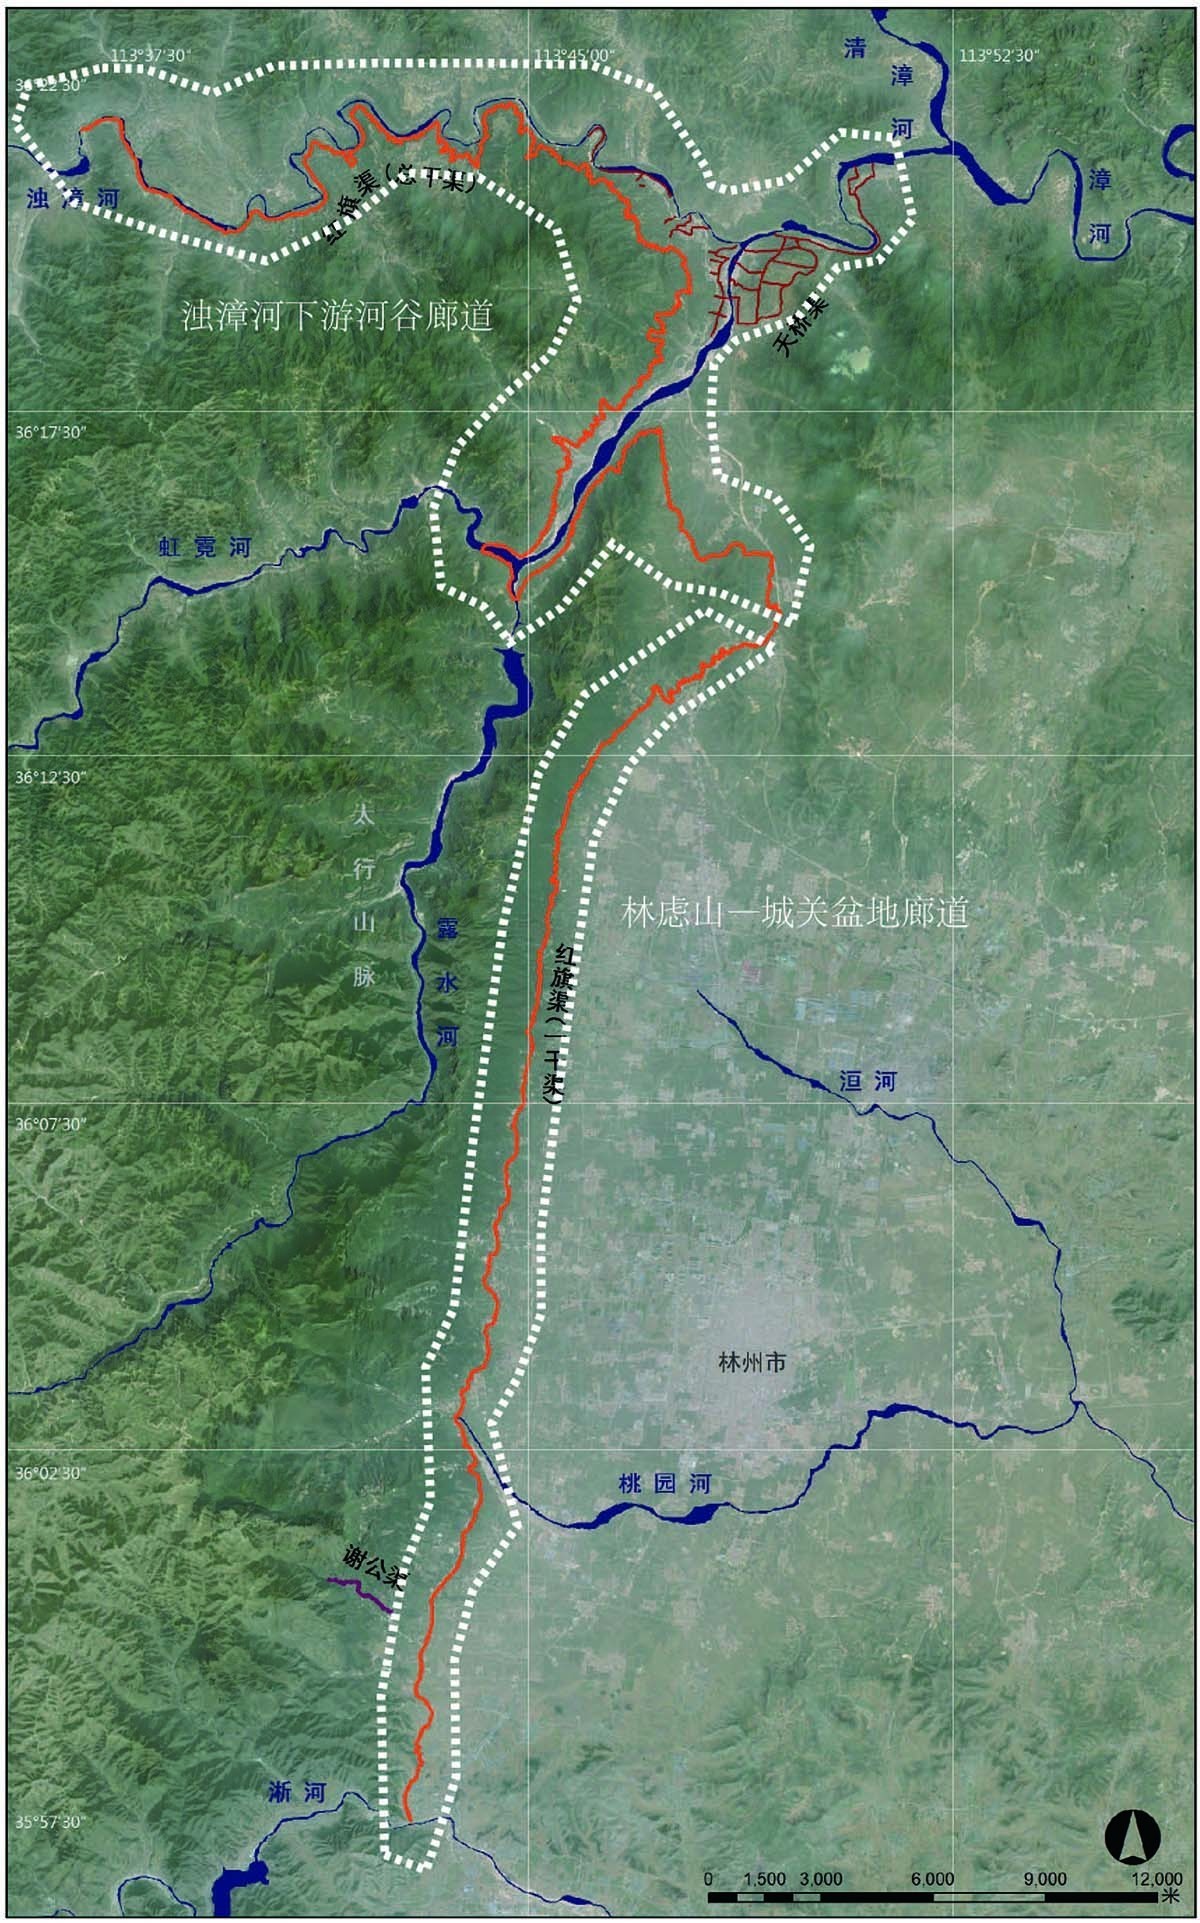 红旗河路线图图片